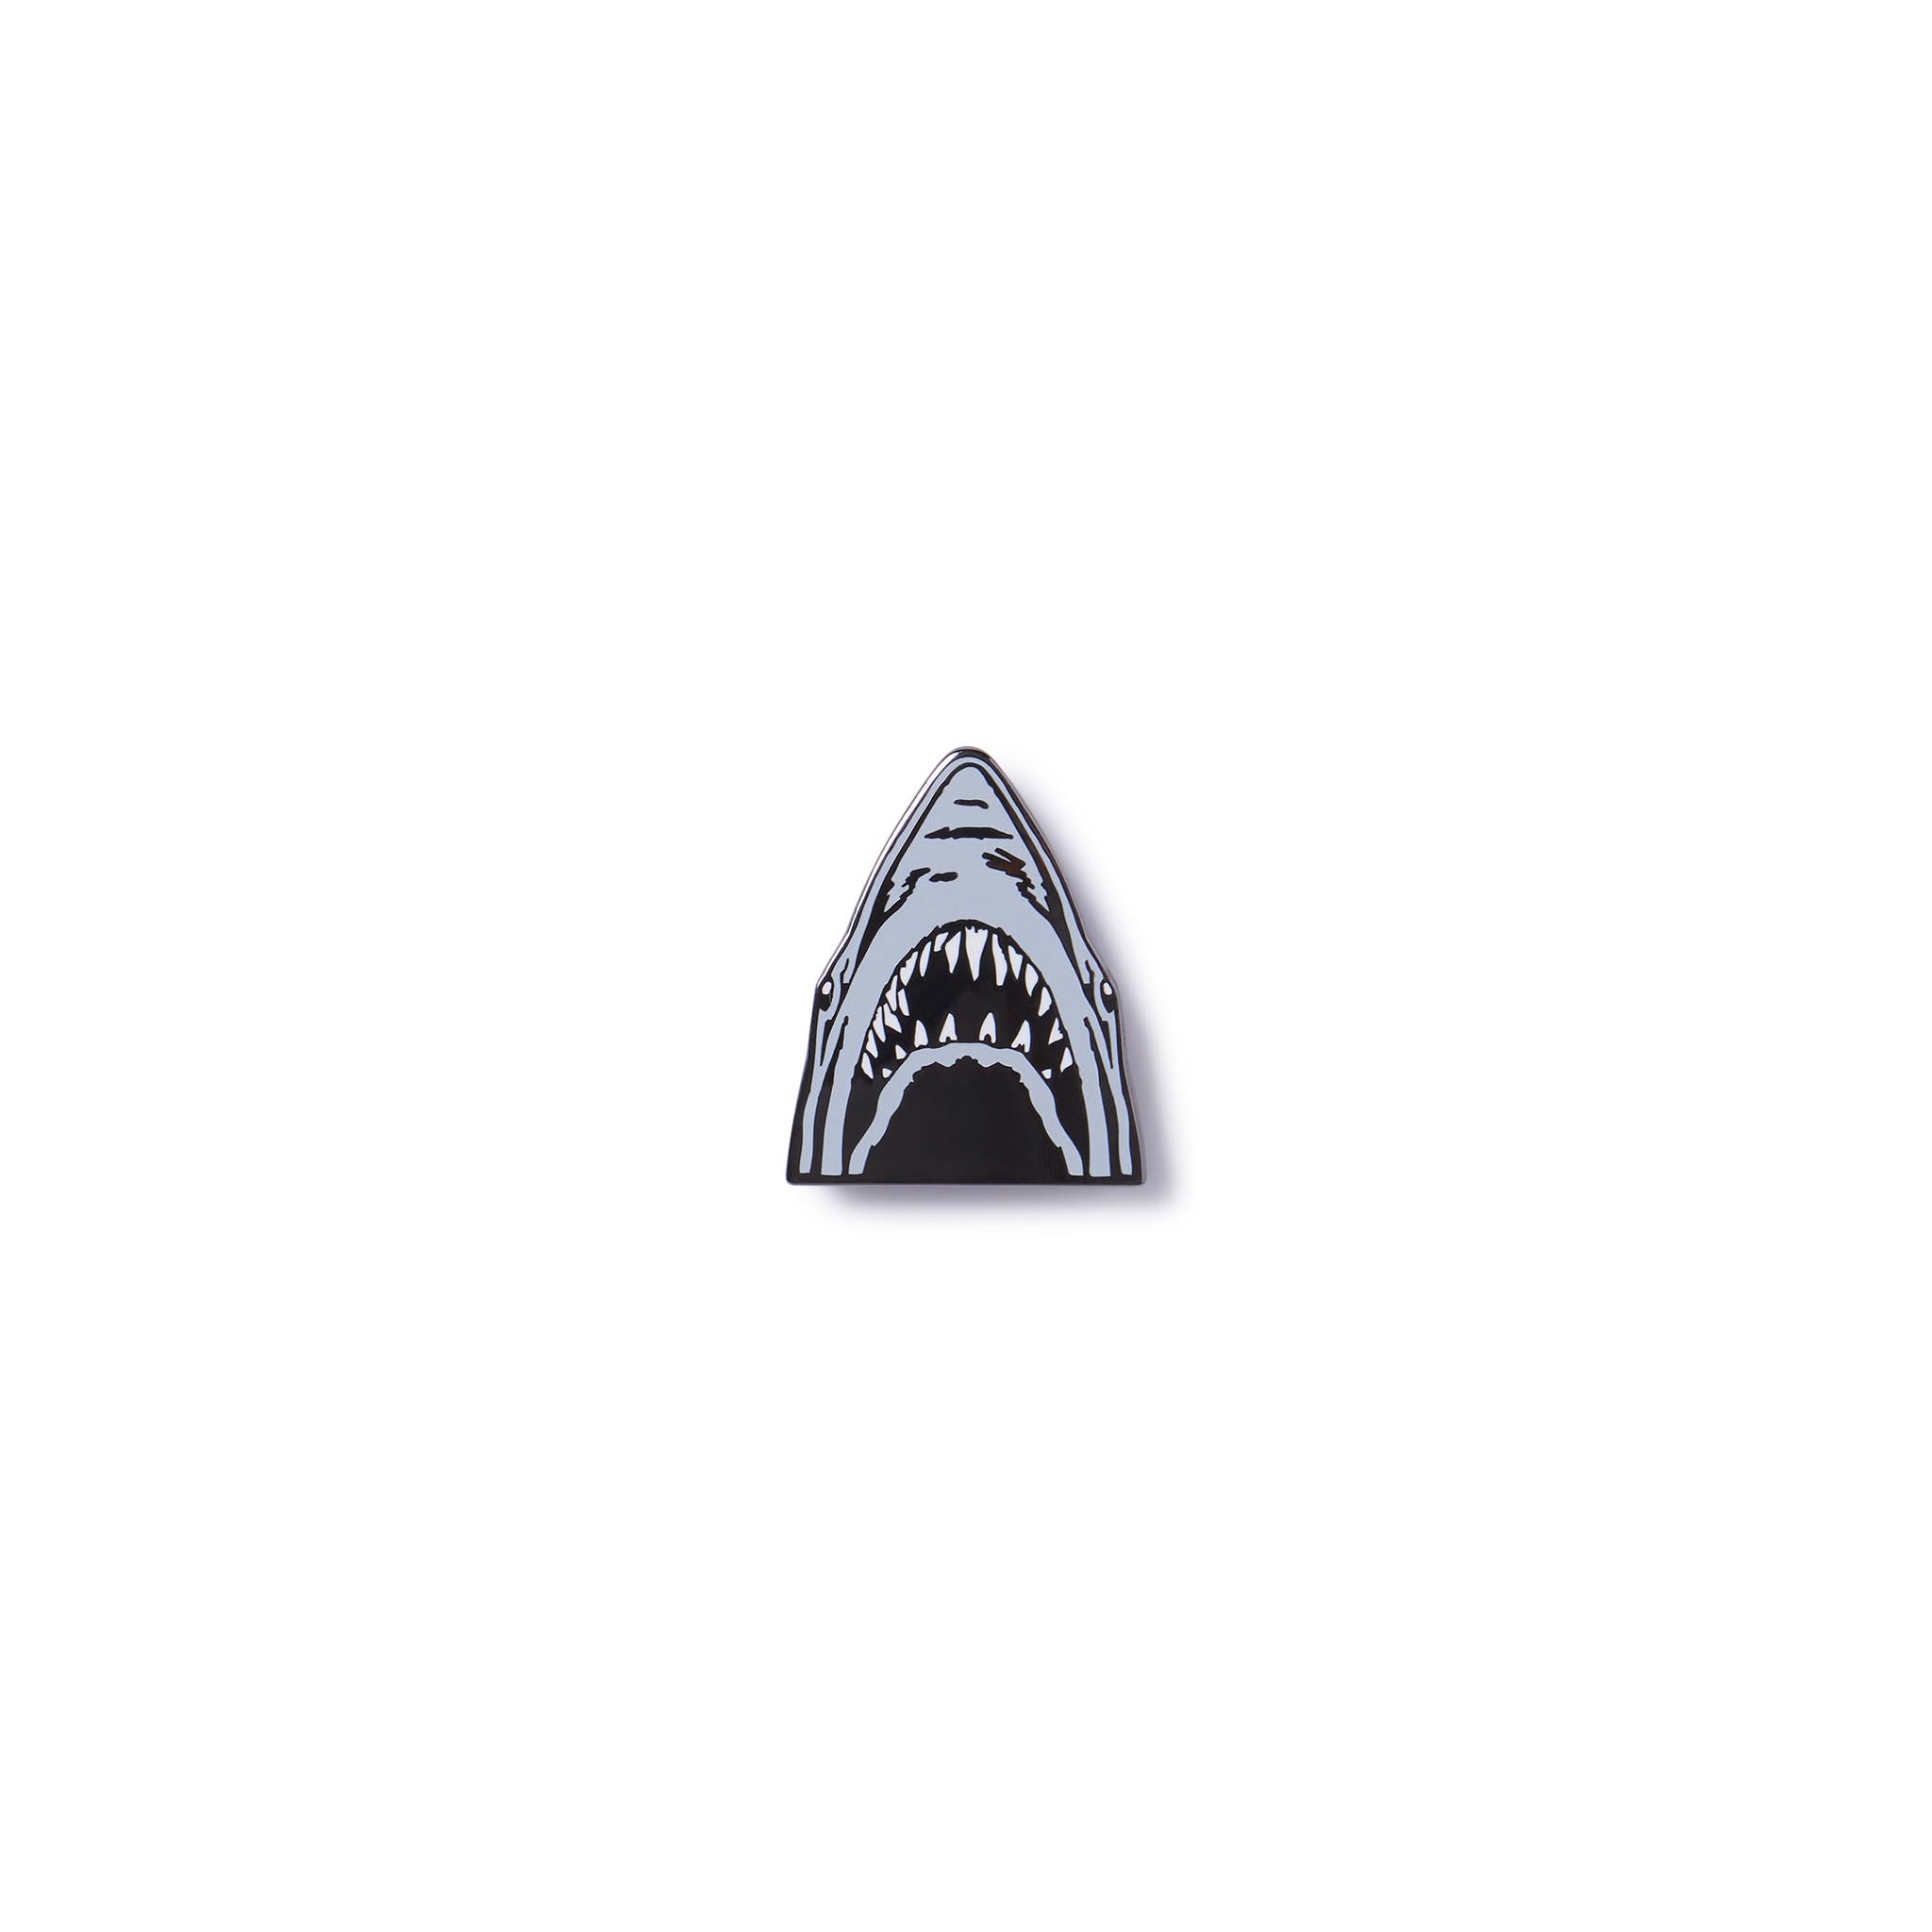 JAWS ENAMEL PIN